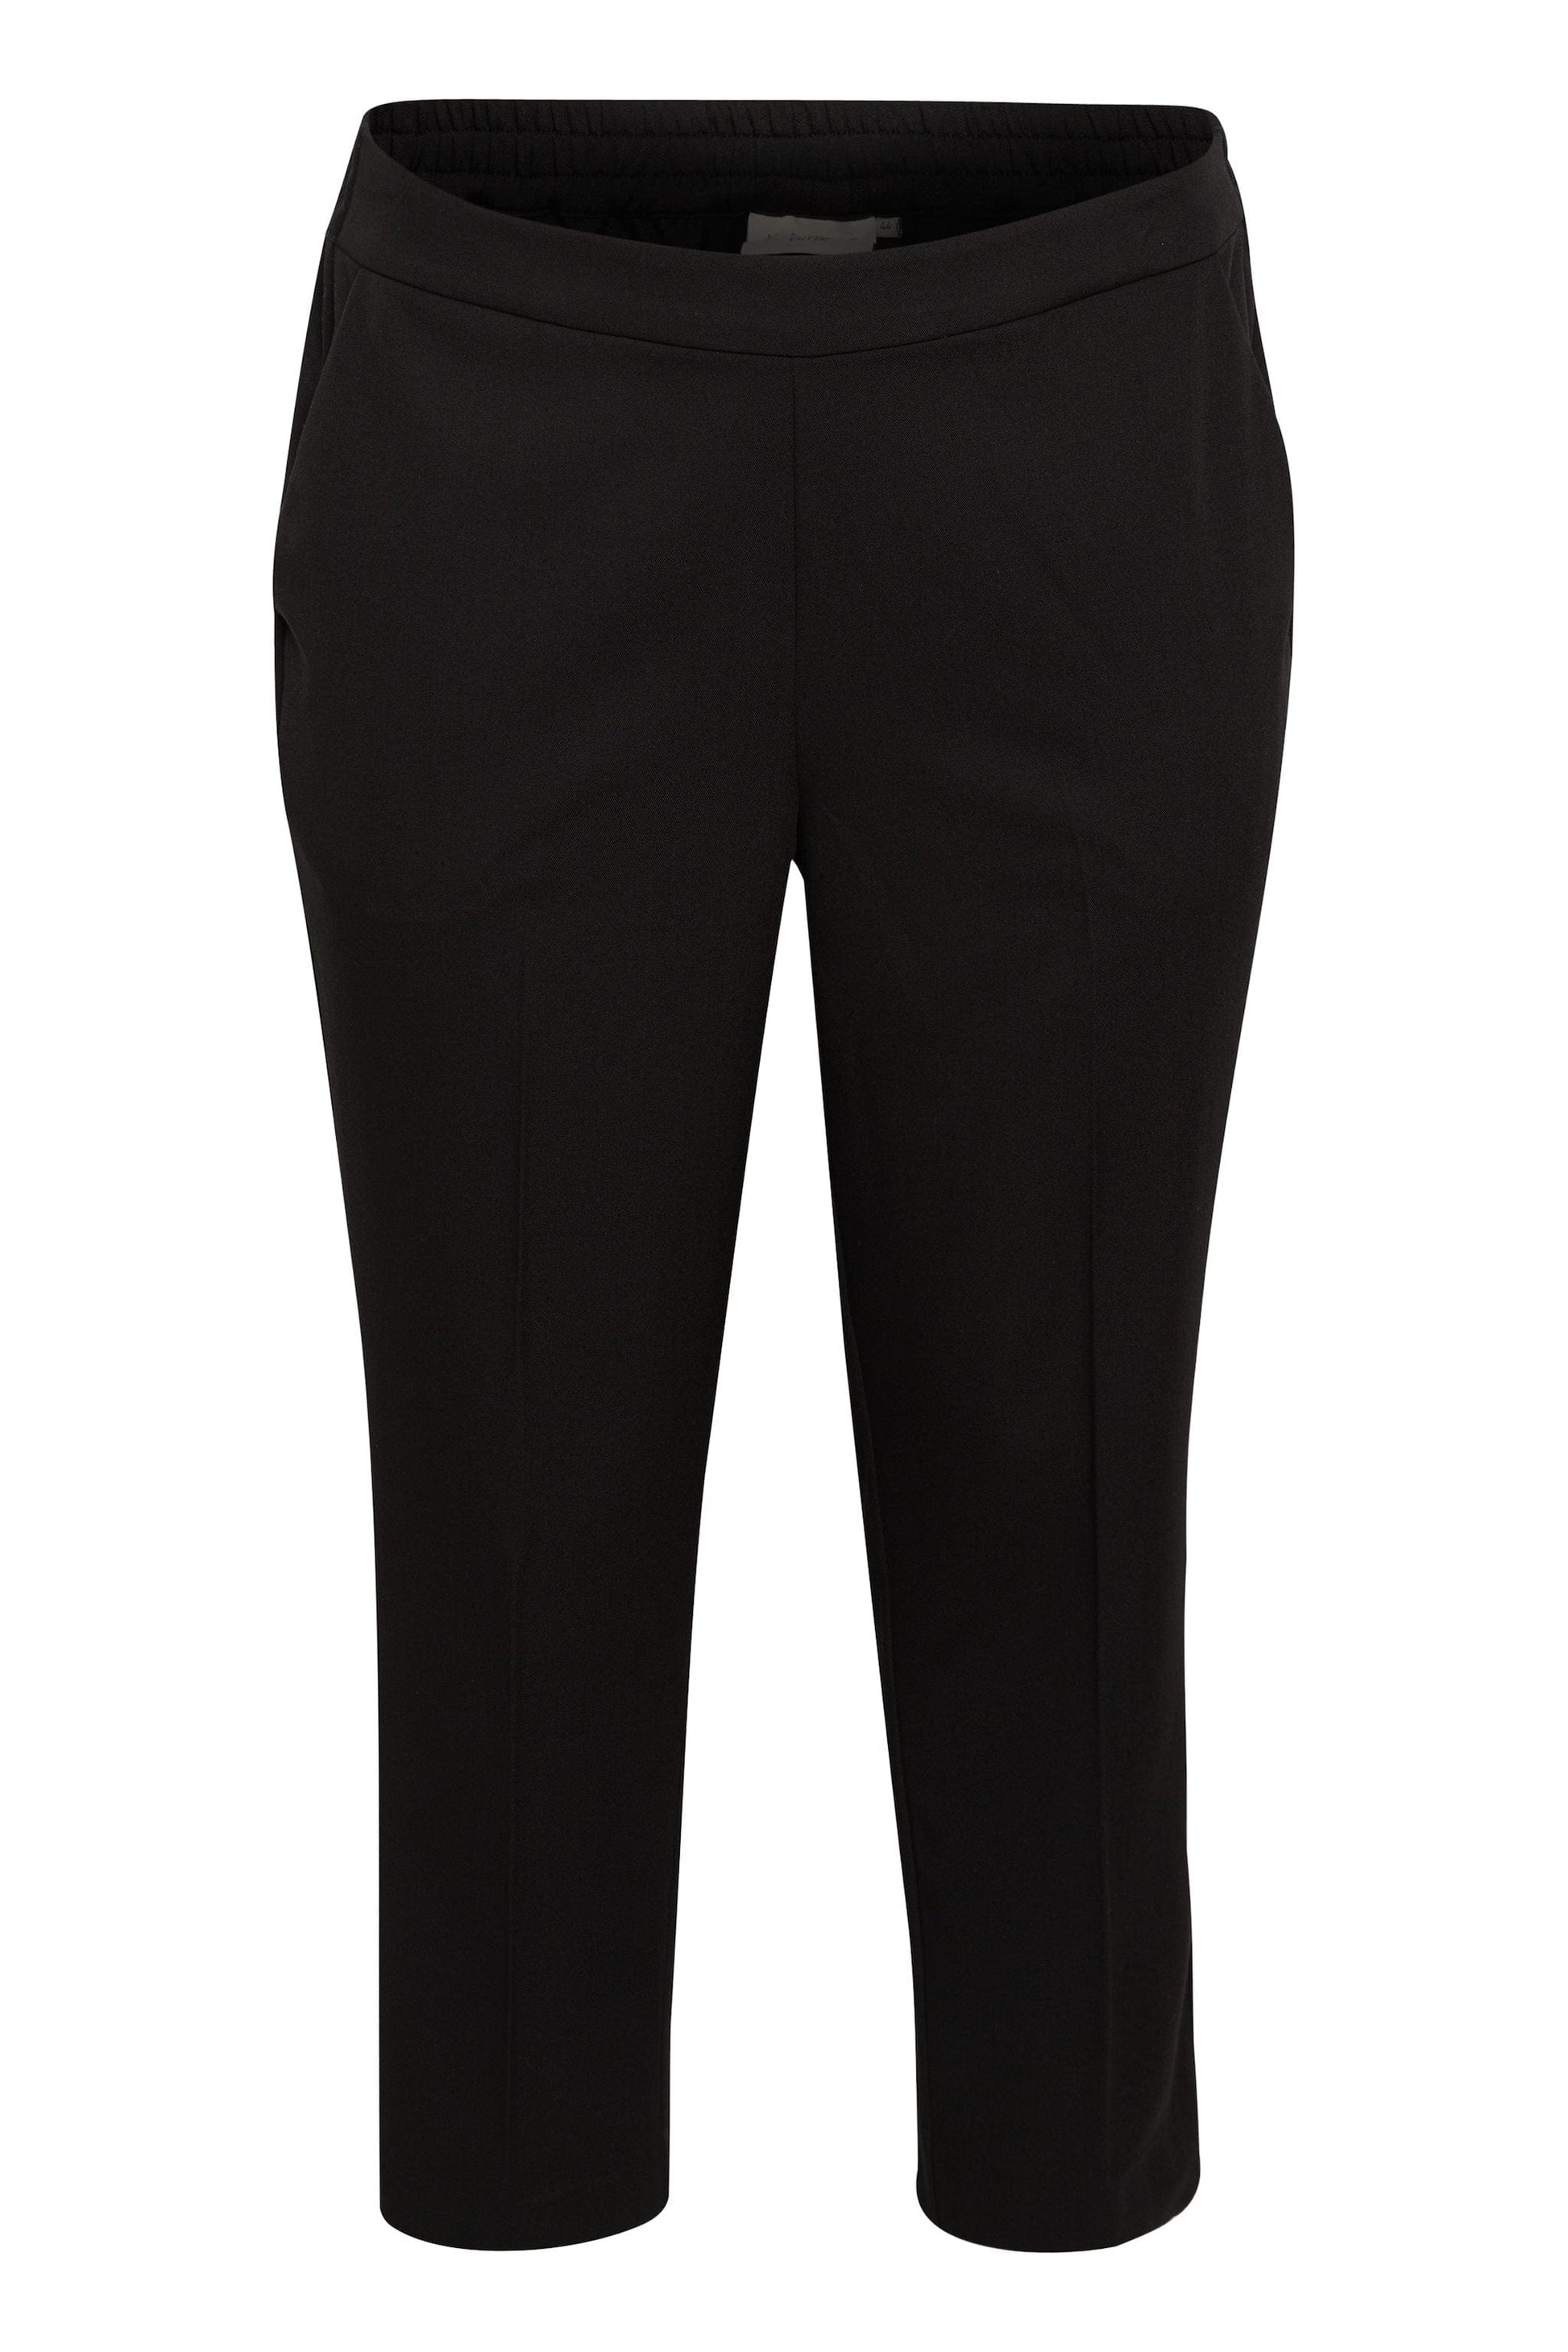 En sort klassisk bukse med lommer og strikk bak i livet fra Kaffe Curve som er perfekt i garderoben. Buksen har en god passform som holder seg vask etter vask. Ankellengde er perfekt til støvletter.